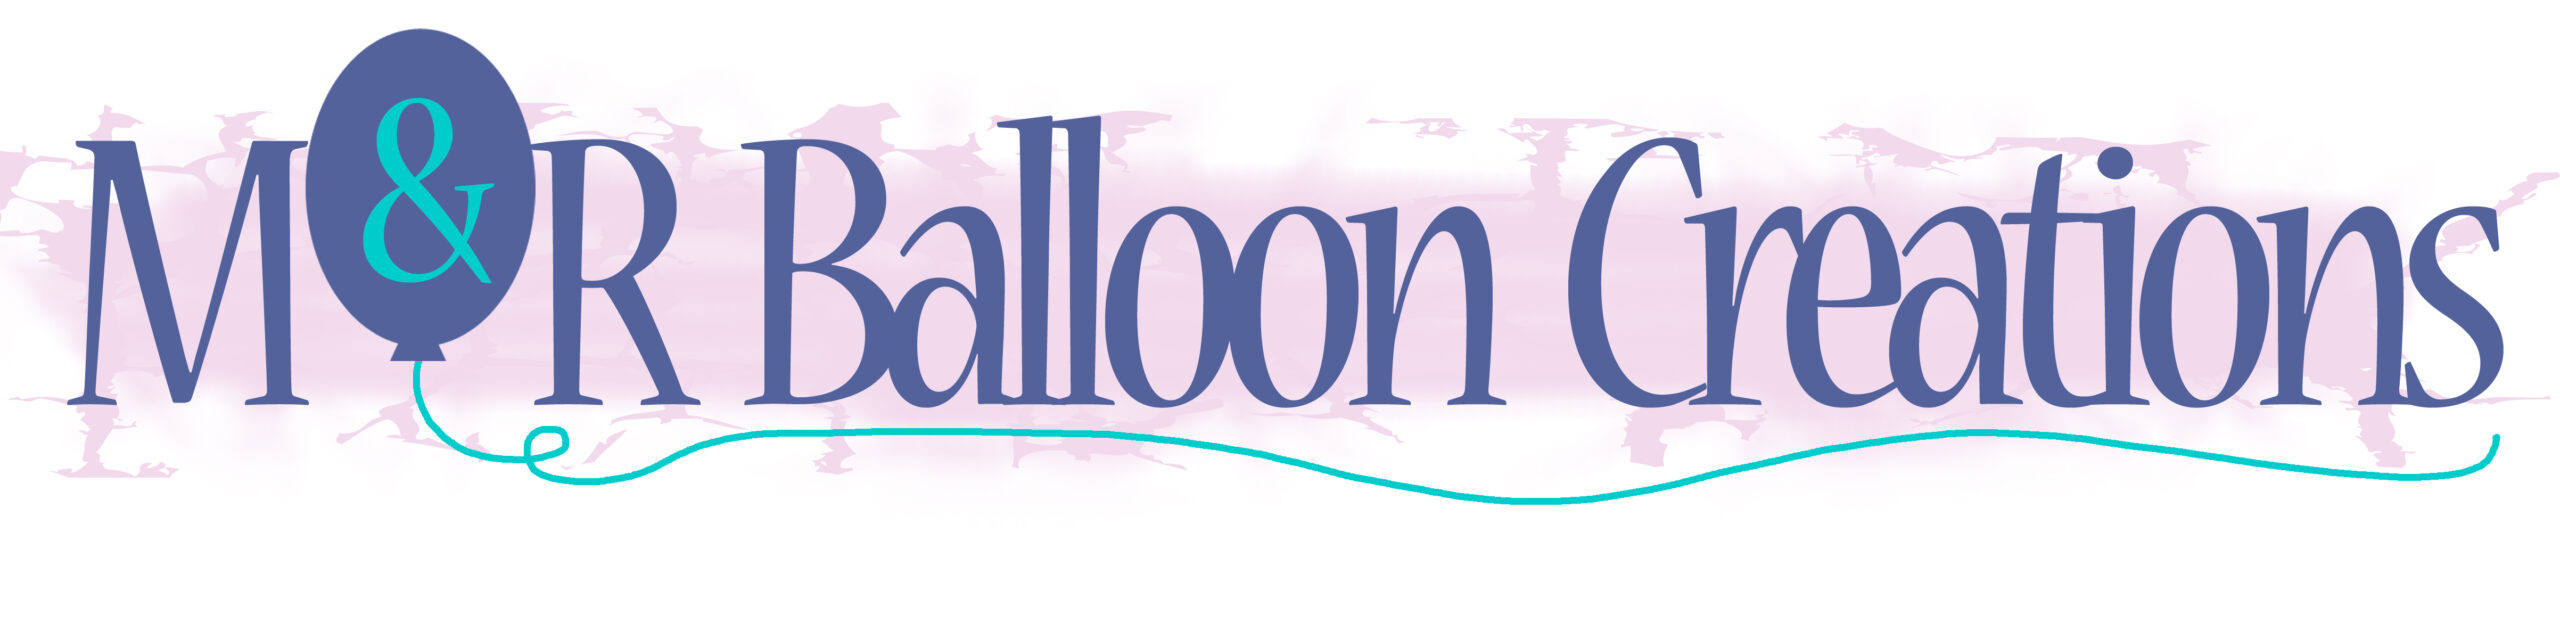 M&R Balloon Creations Logo